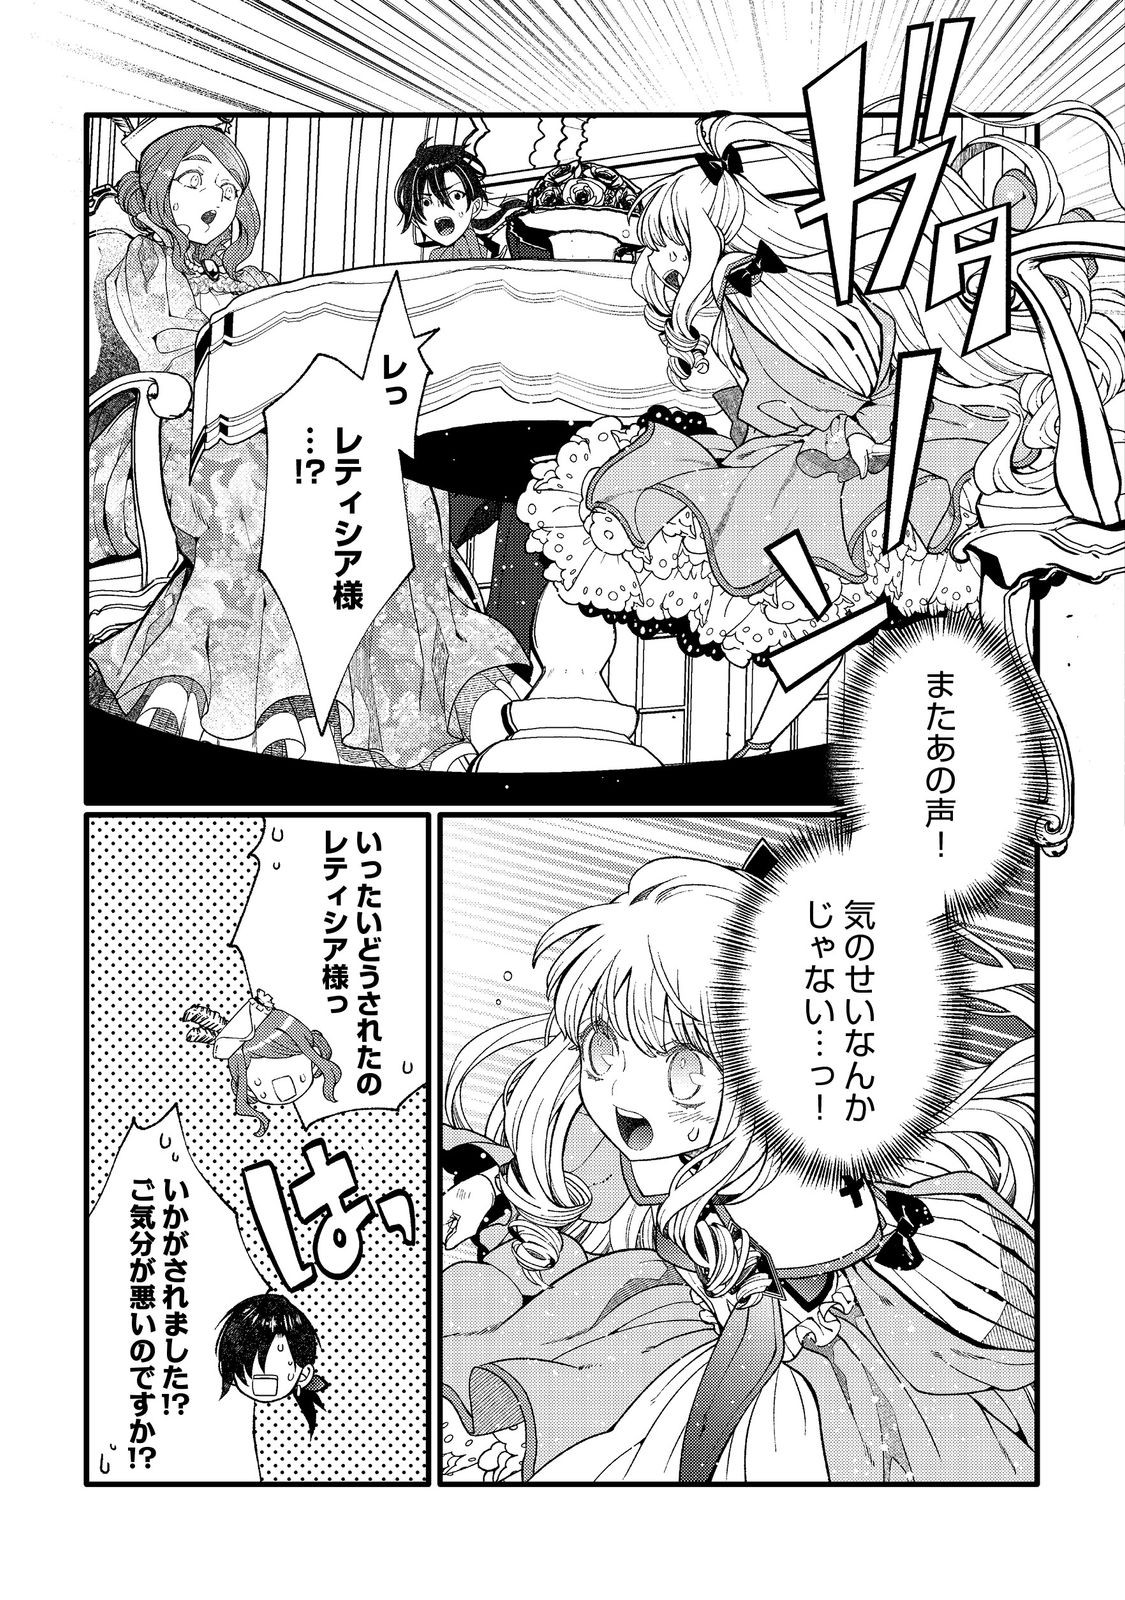 5-sai de, Ryuu no Ou Otoutou Denka no Hanayoume ni Narimashita - Chapter 4.1 - Page 11